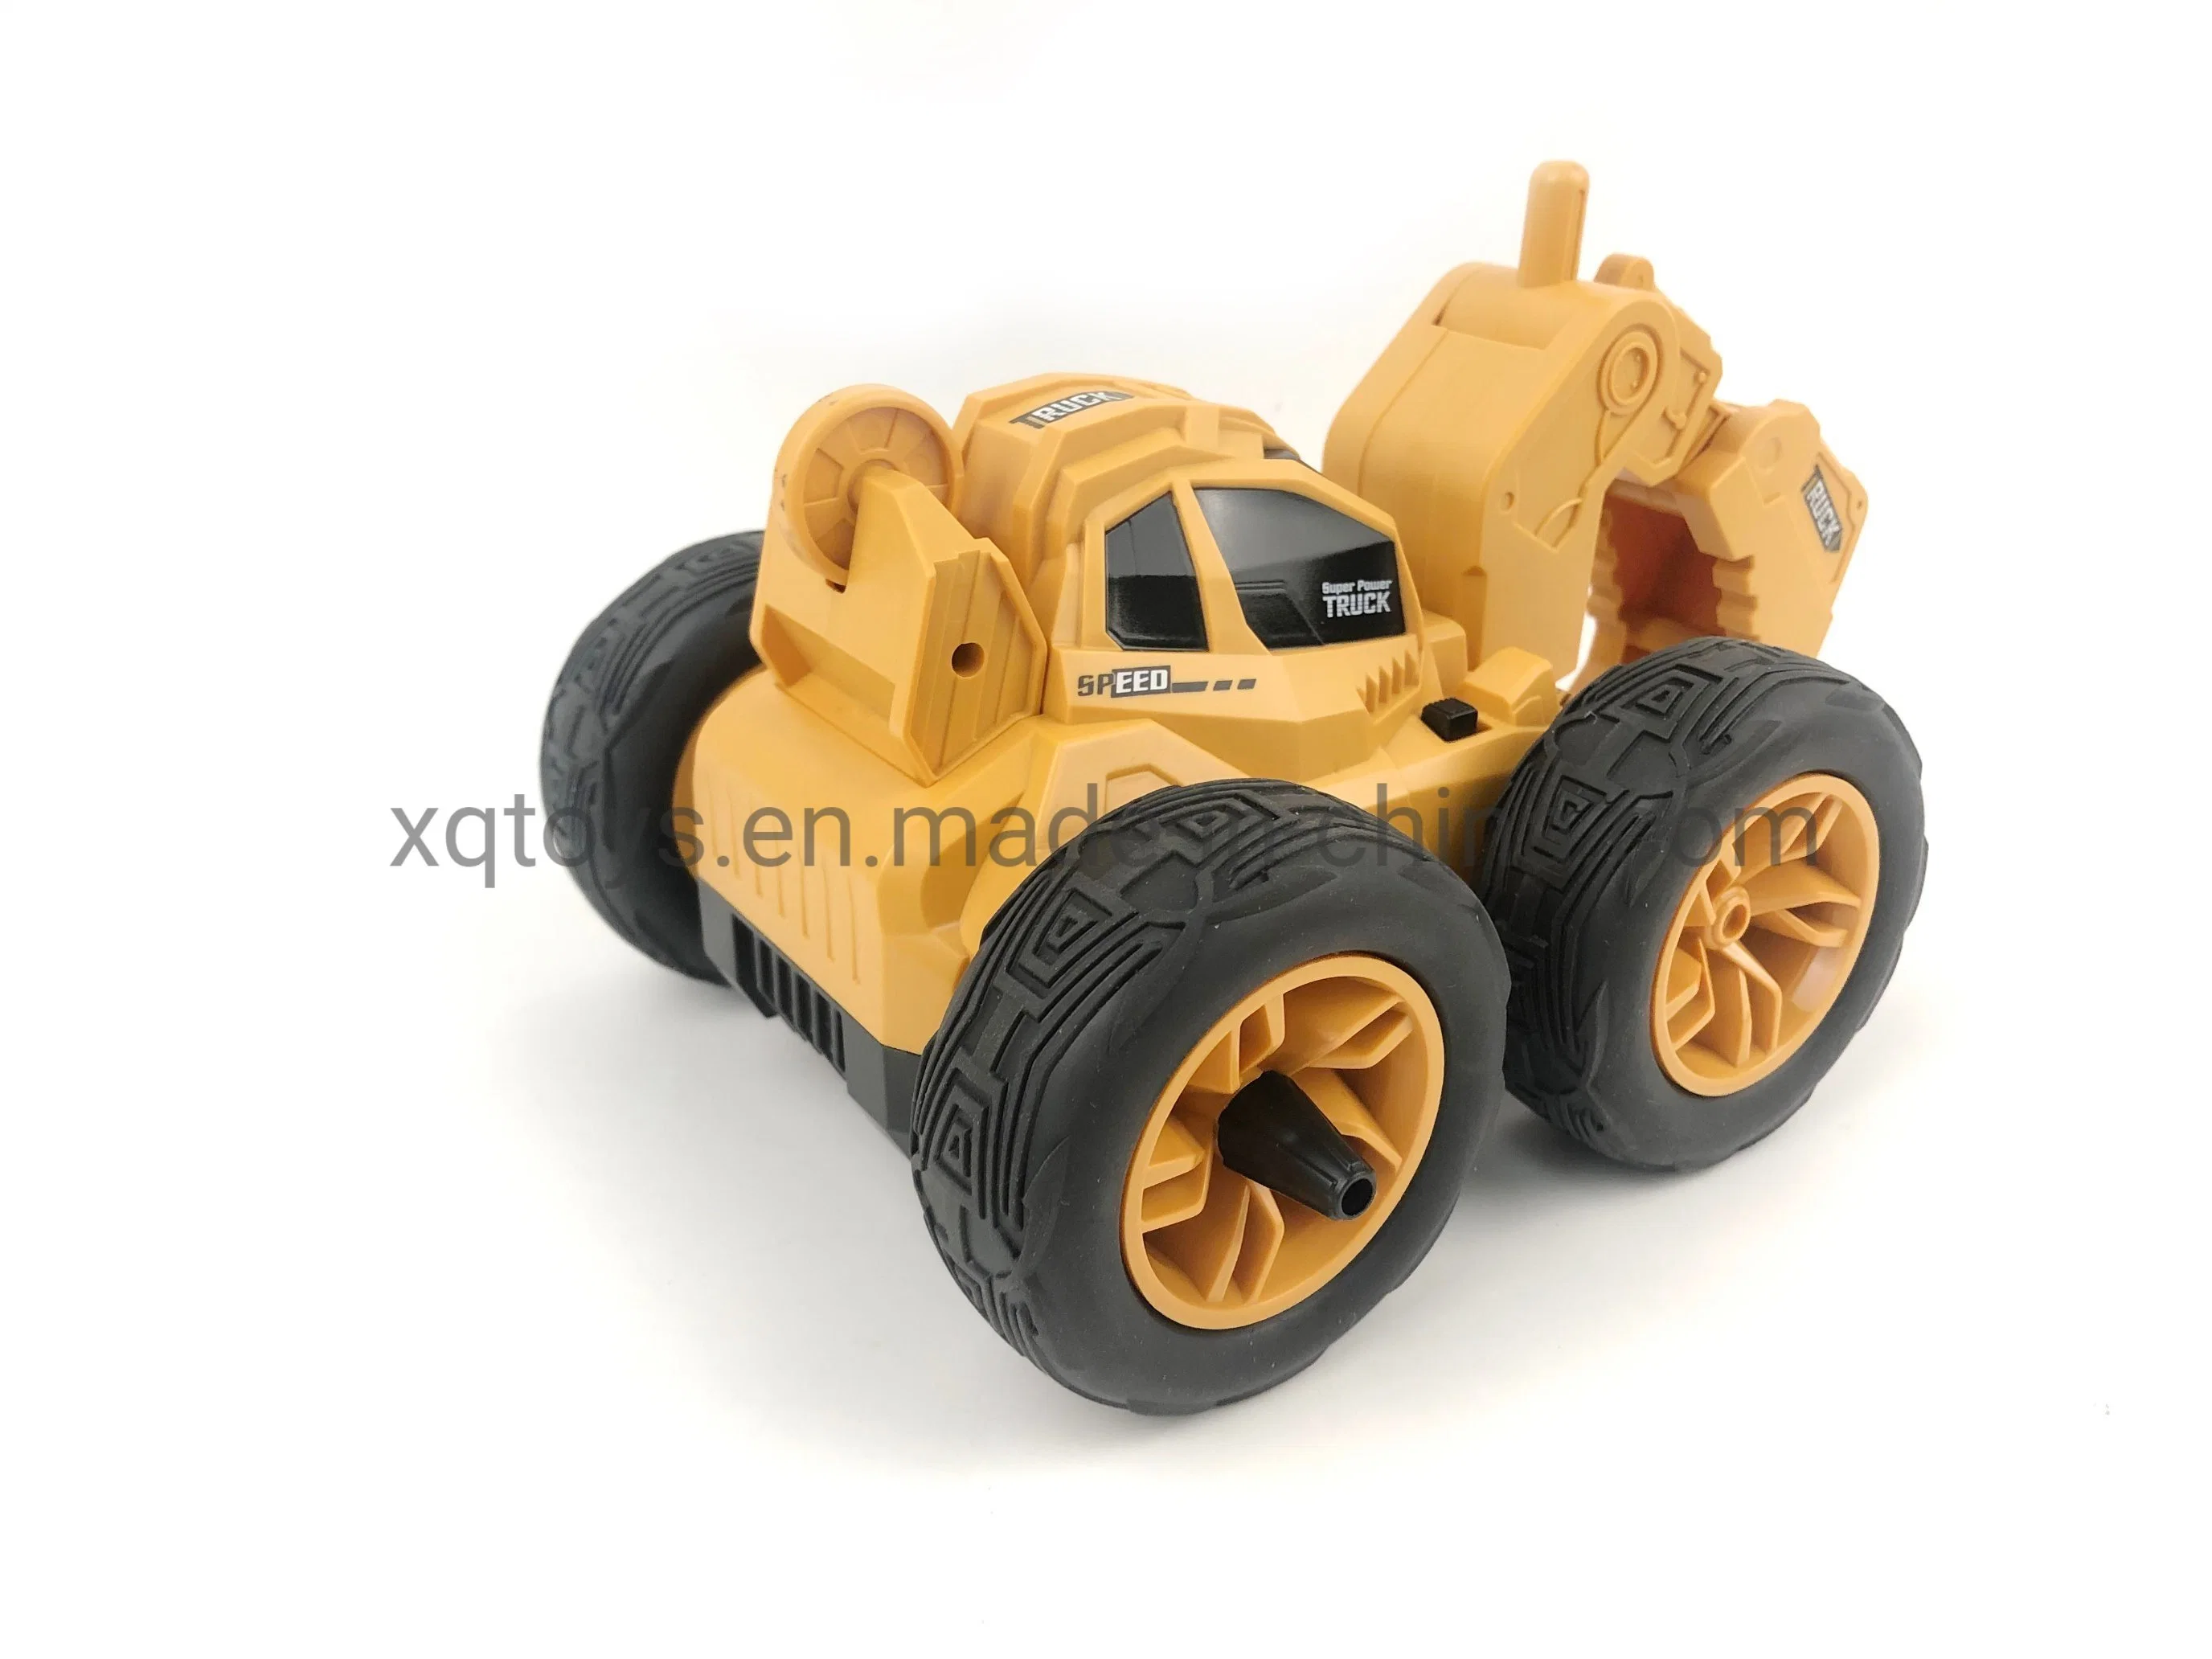 Modell im Maßstab 1: 28 Fernbedienung Auto RC Truck Stunt Car 2,4G RC Bagger Spielzeug